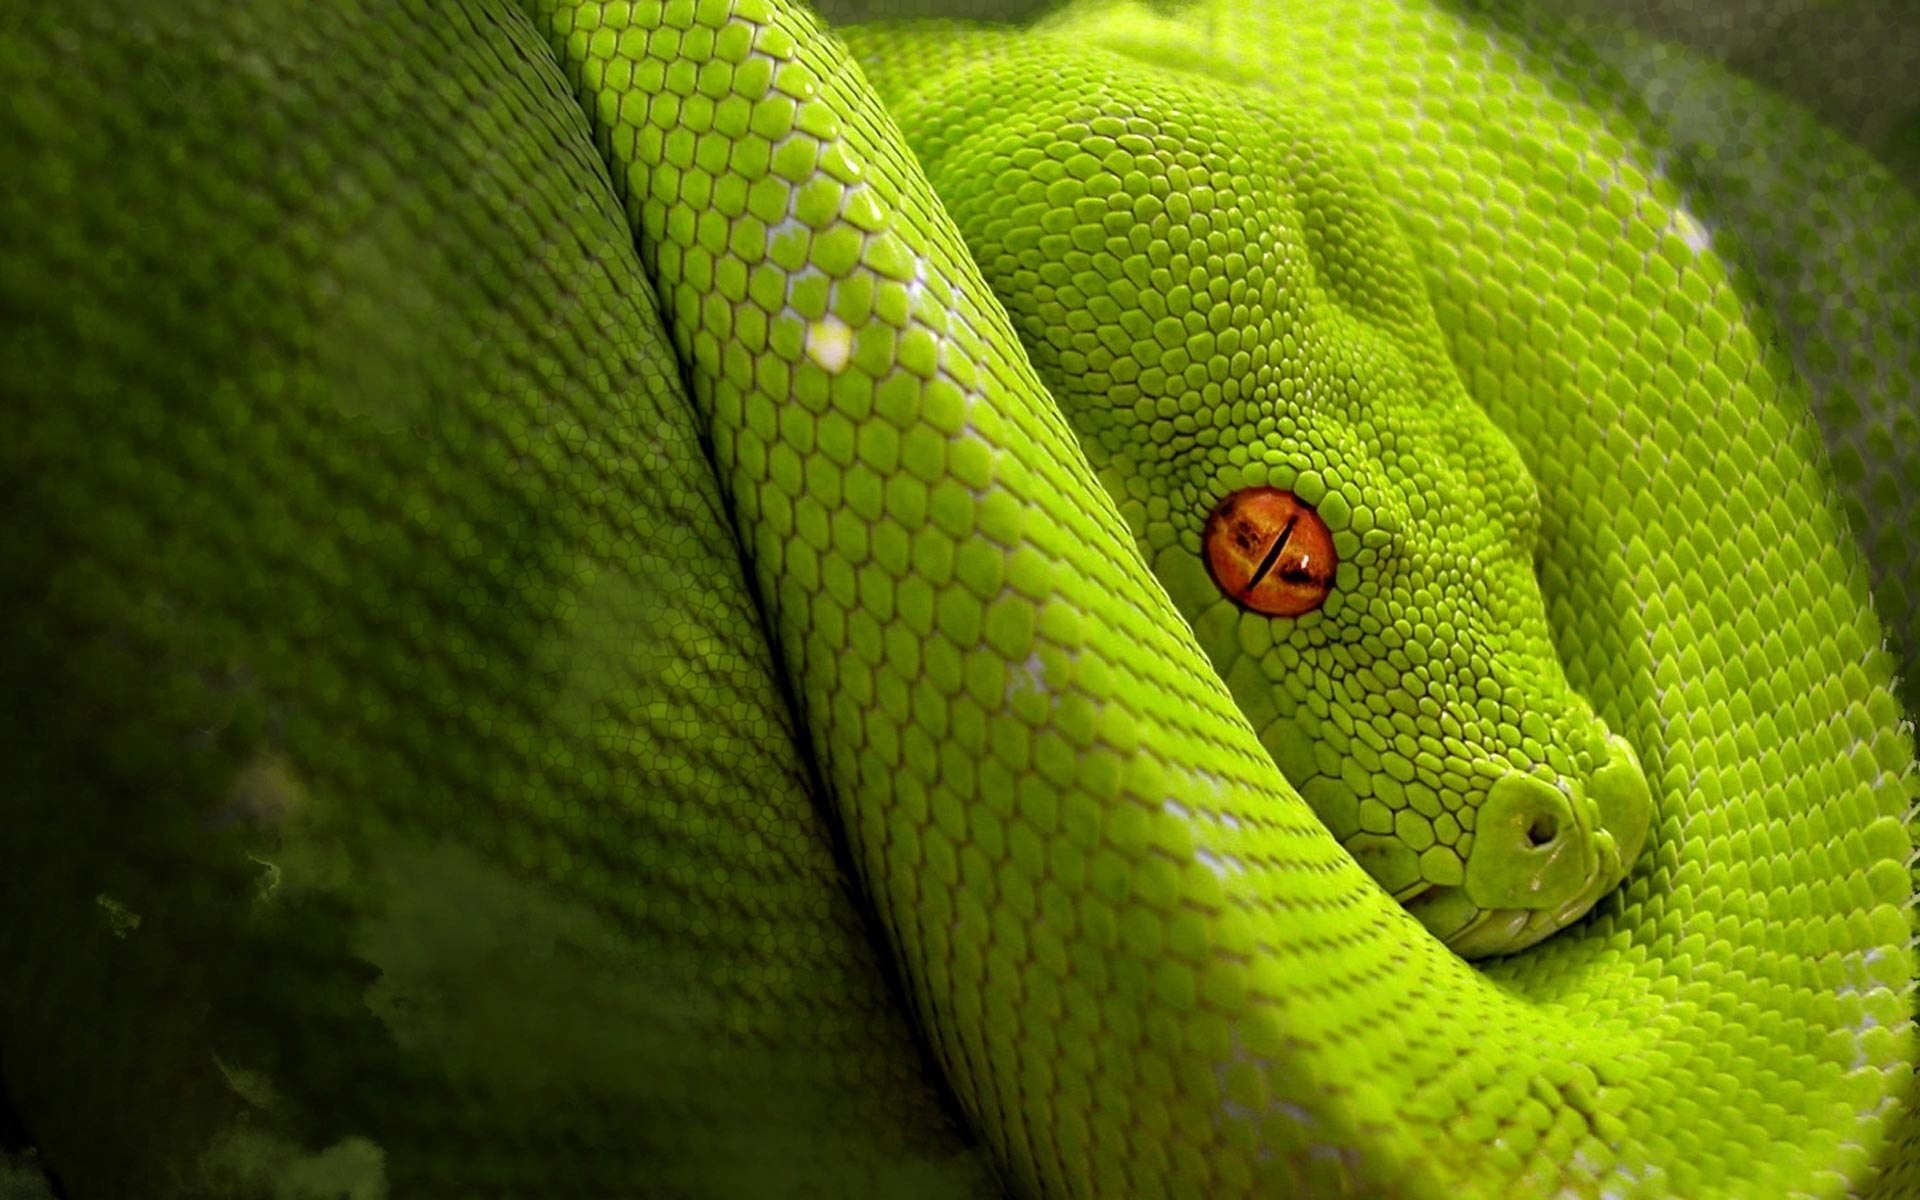 General 1920x1200 snake green digital art orange eyes reptiles animals